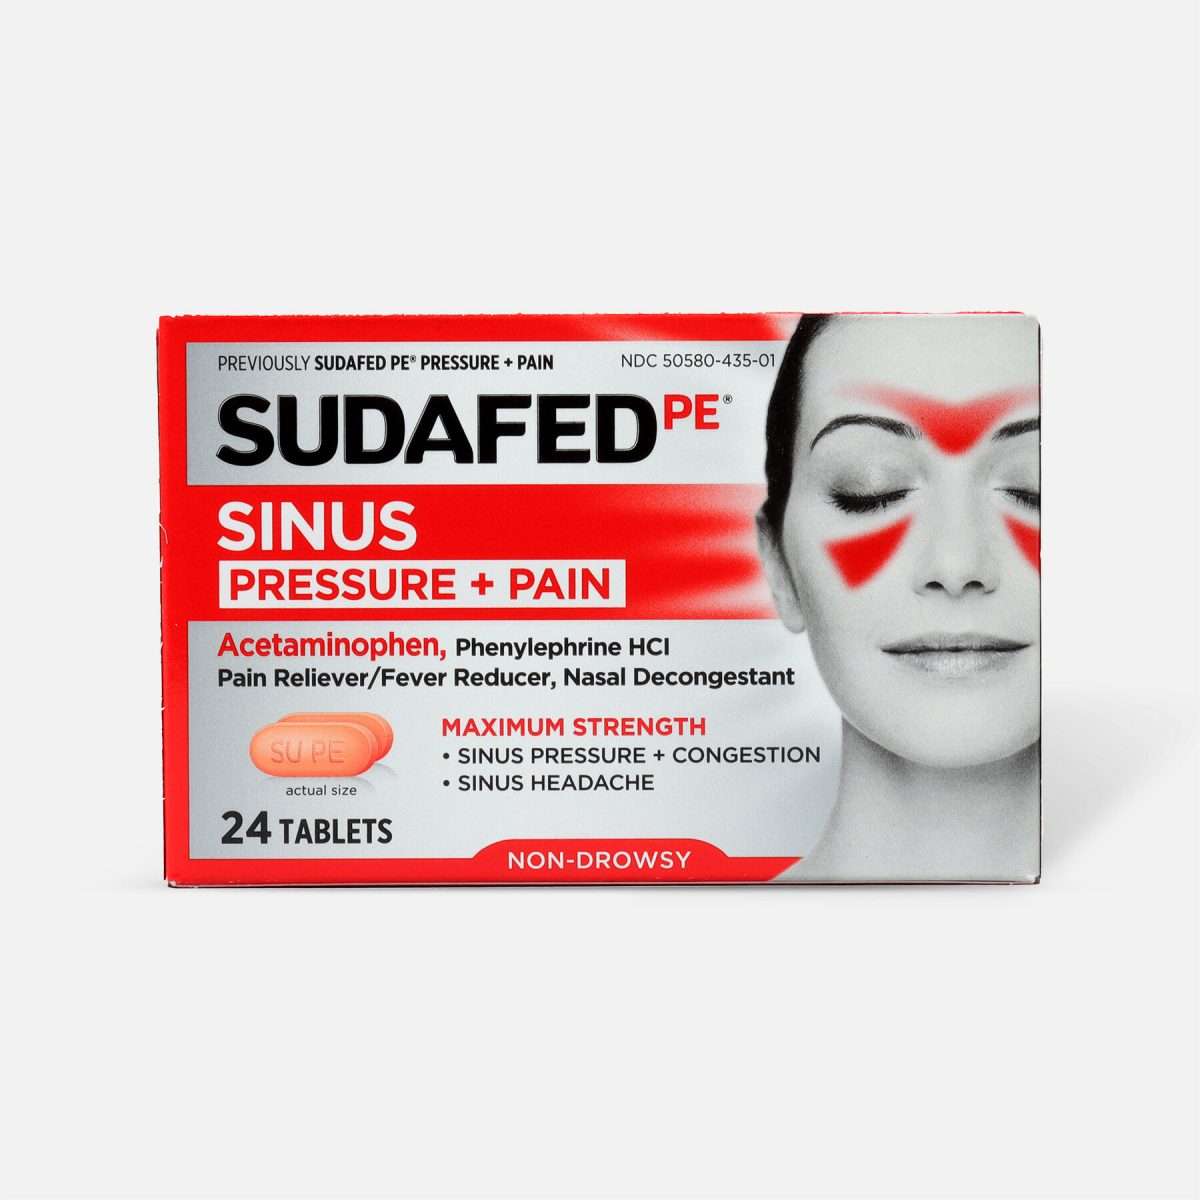 Sudafed PE Sinus Pressure + Pain Max Strength Non